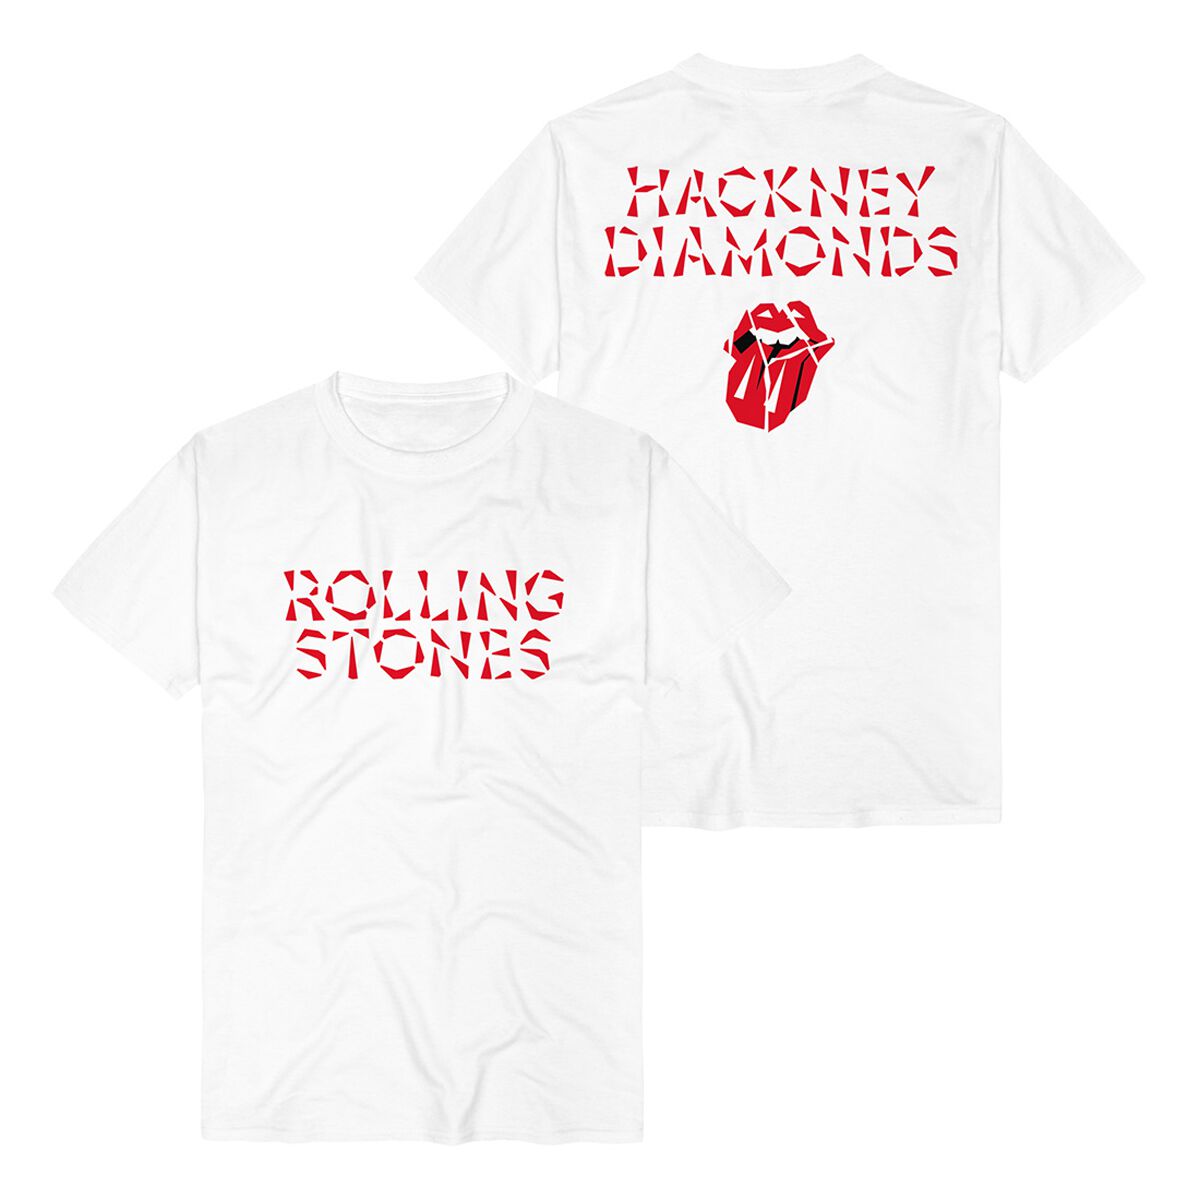 The Rolling Stones T-Shirt - Hackney Diamonds Logo - S bis XXL - für Männer - Größe L - weiß  - Lizenziertes Merchandise!